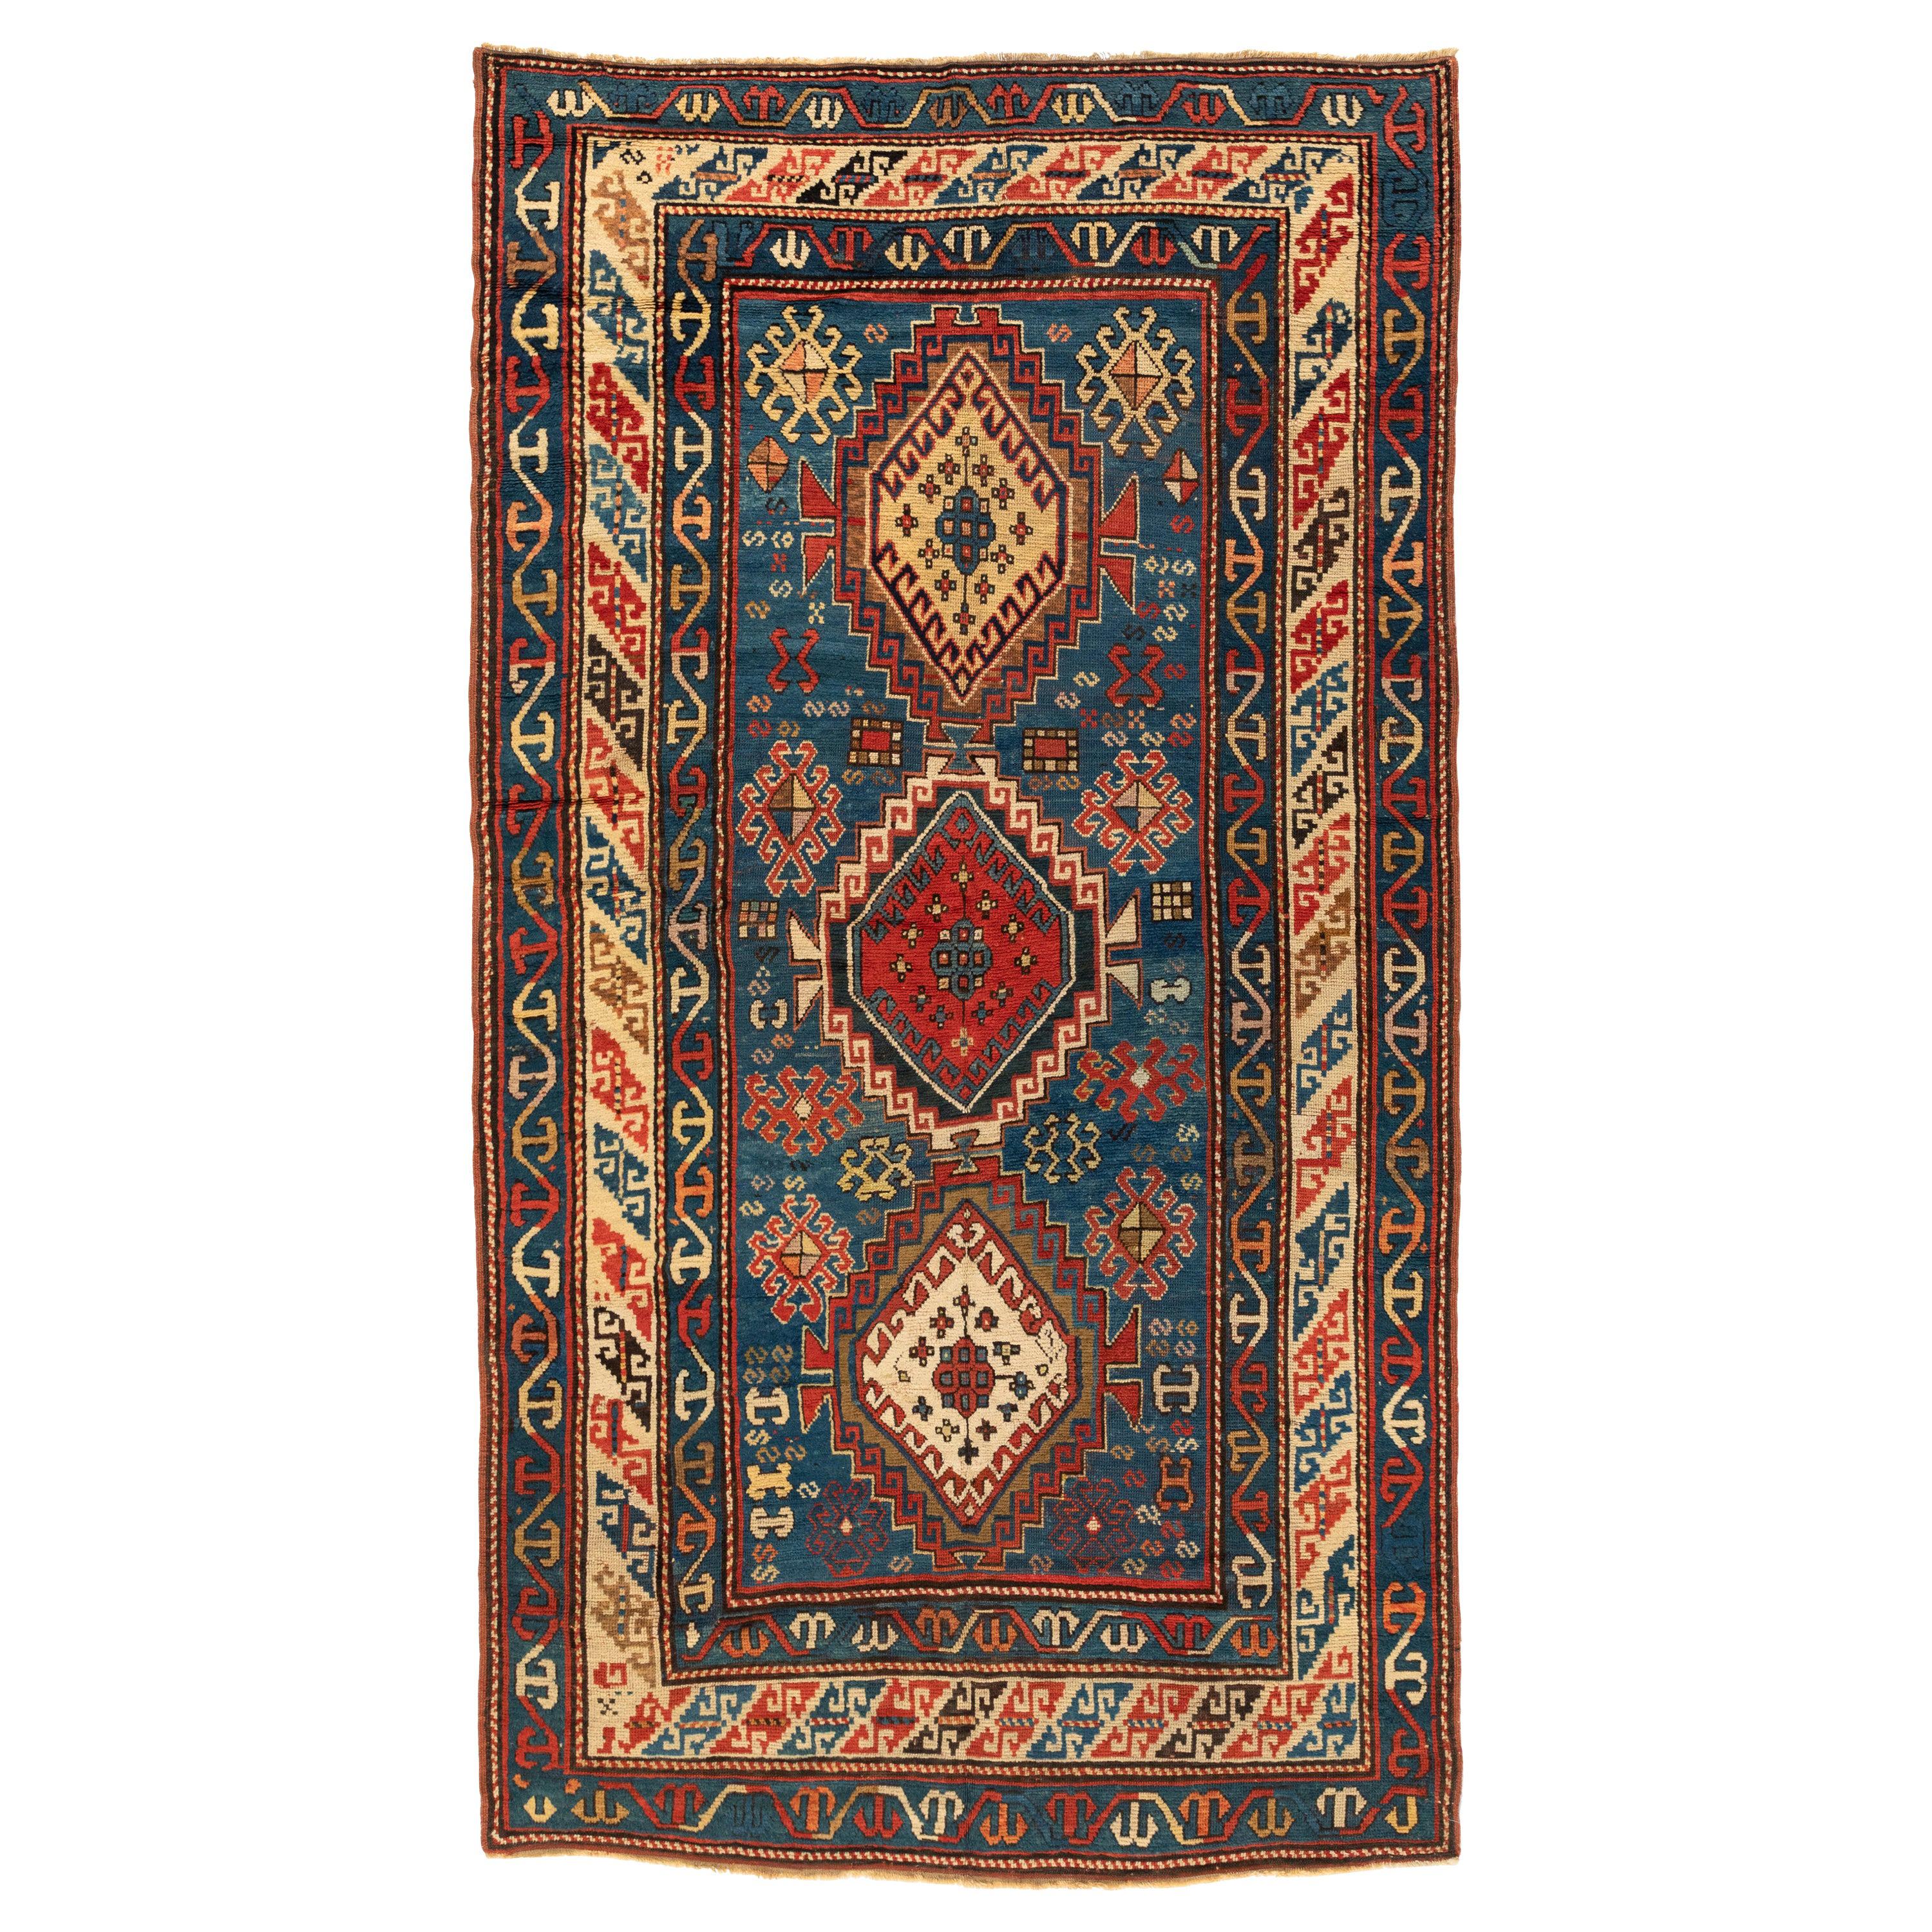 Antique Caucasian Tribal Blue Red Kazak Carpet, c. 1900s-1910s For Sale